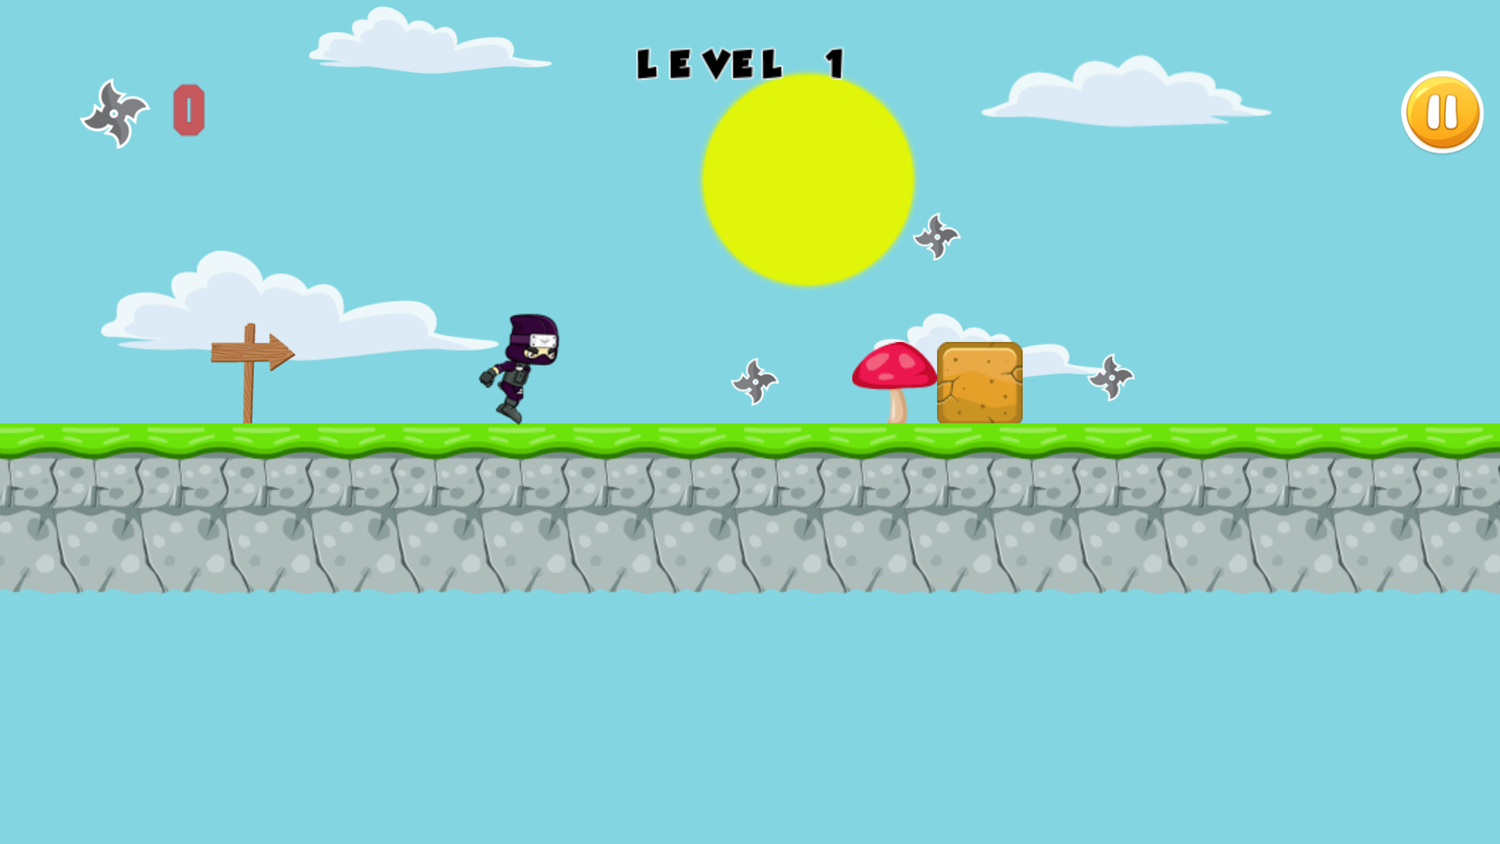 Ninja Run Adventure Game Level Start Screenshot.